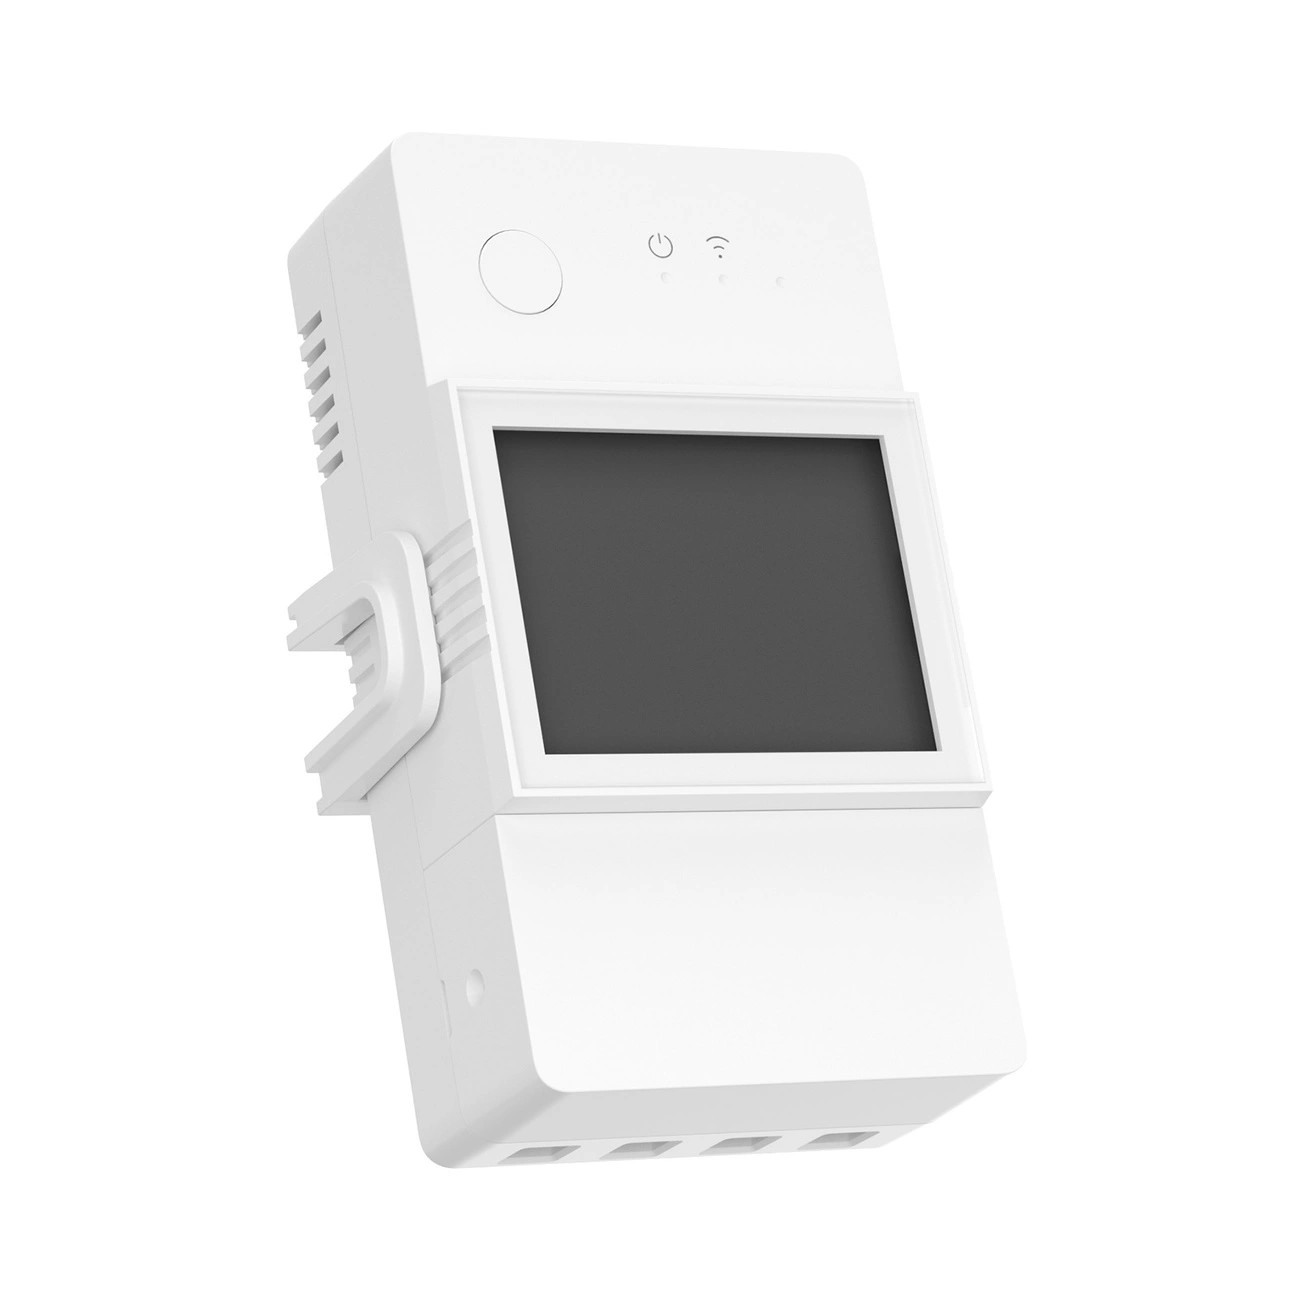 POWR320D  SONOFF Pow R3- Relé wifi con función de medición del consumo energético 20A blanco (POWR320D)